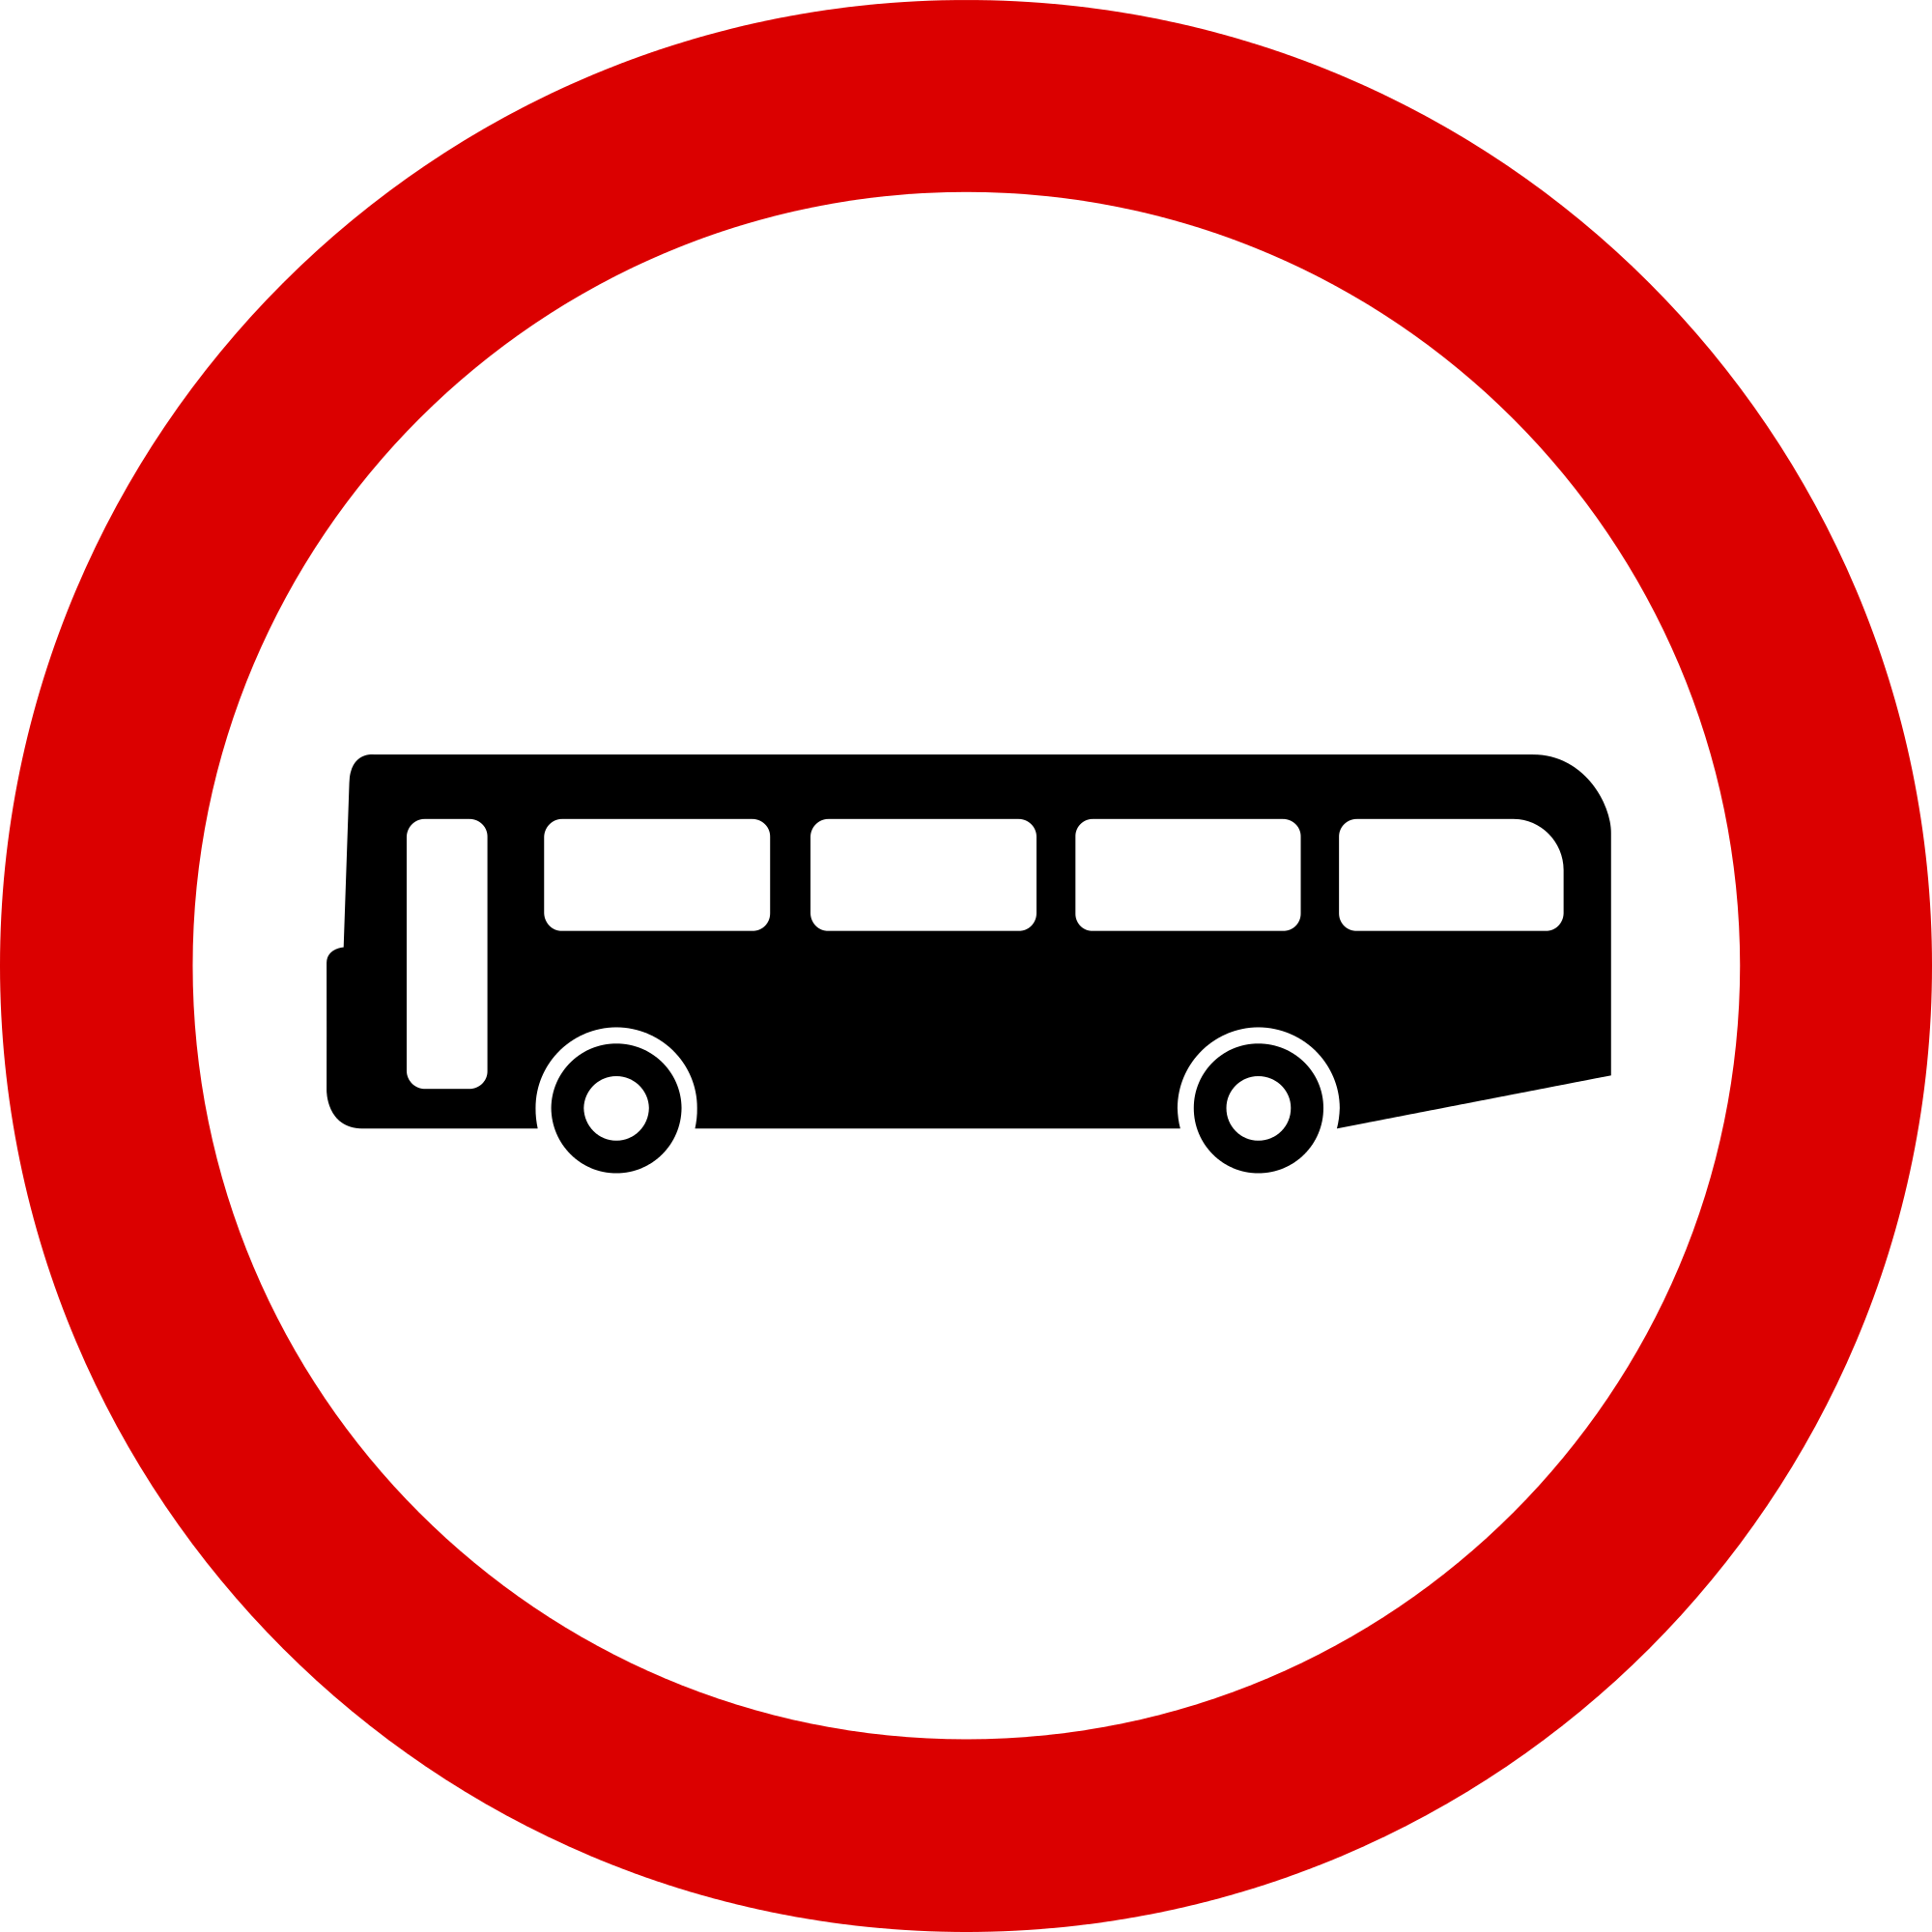 Transportation road transport